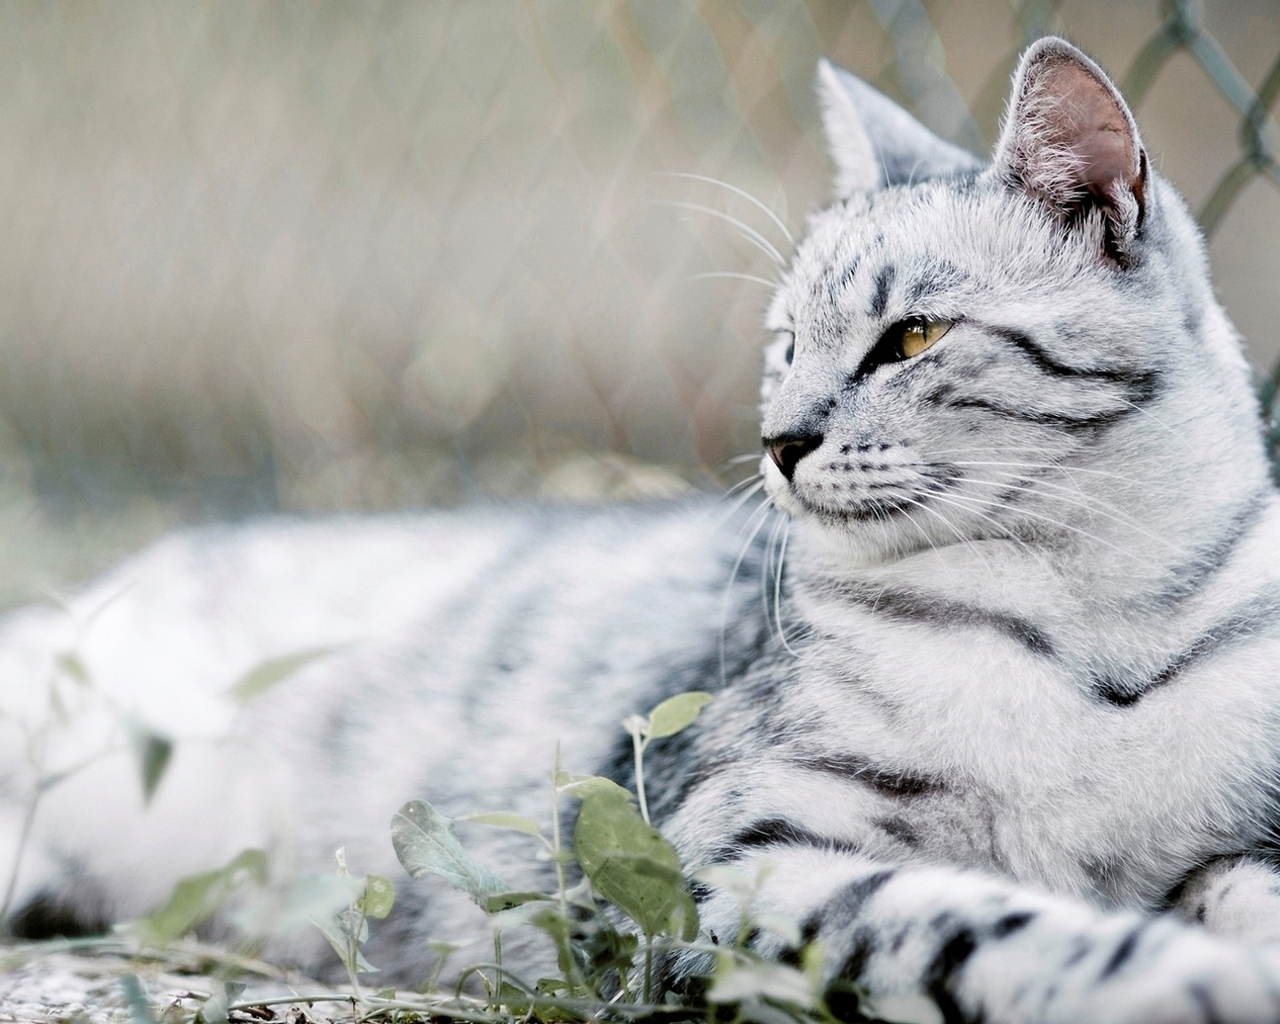 Картинка: Кот, белый, полосатый, трава, лежит, забор